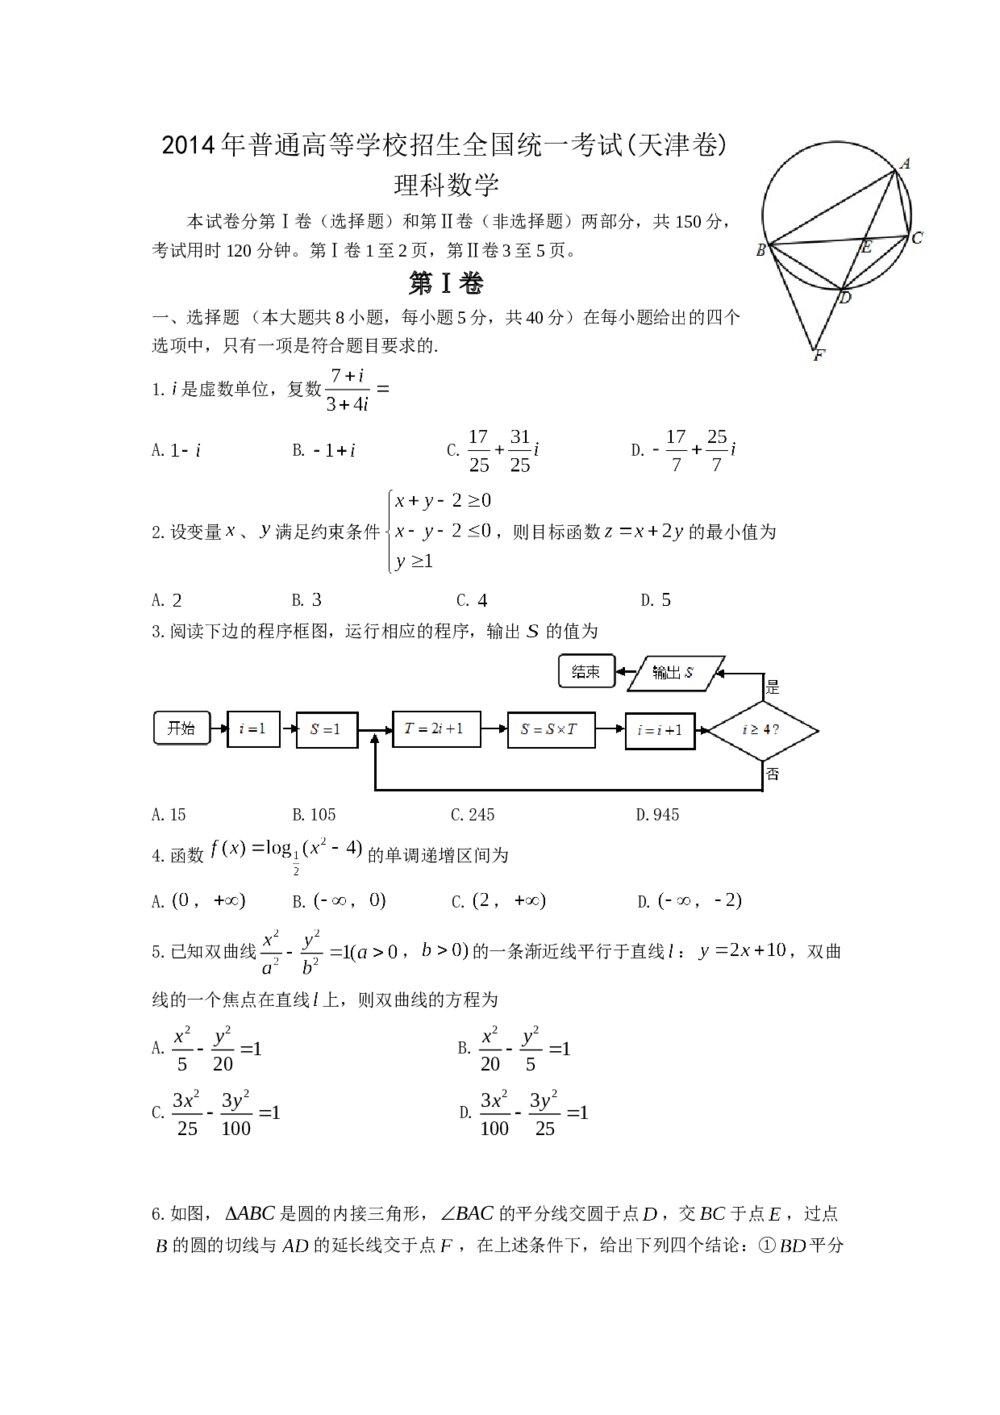 2014年高考理科数学试题(天津卷)word+参考答案解析